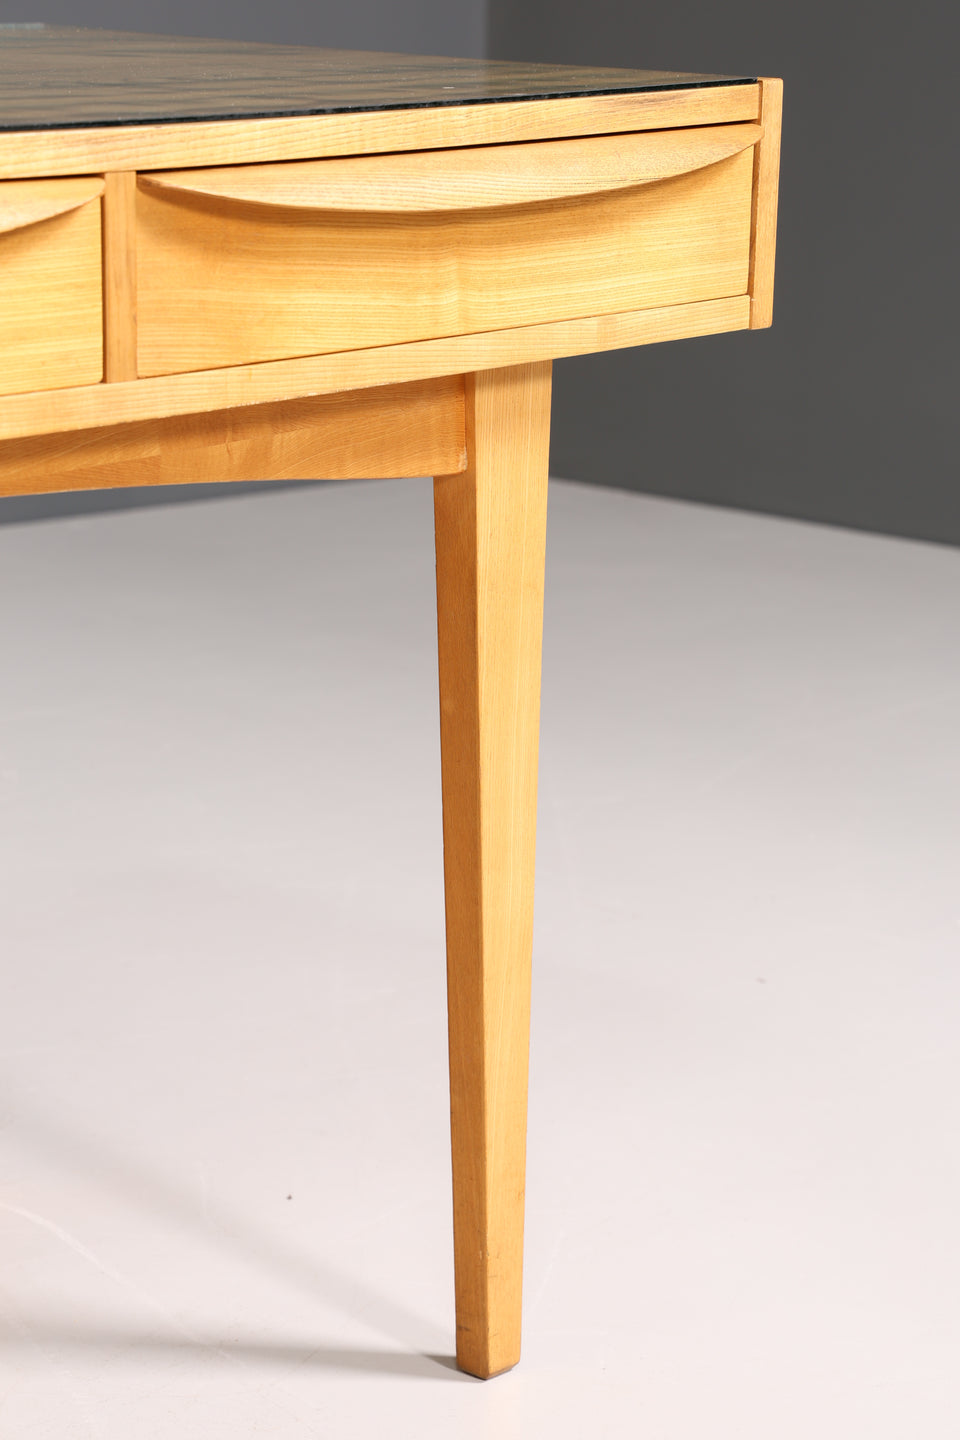 Hellerau Schreibtisch Modell 602 Mid Century Franz Ehrlich Design Bürotisch Vintage Desk